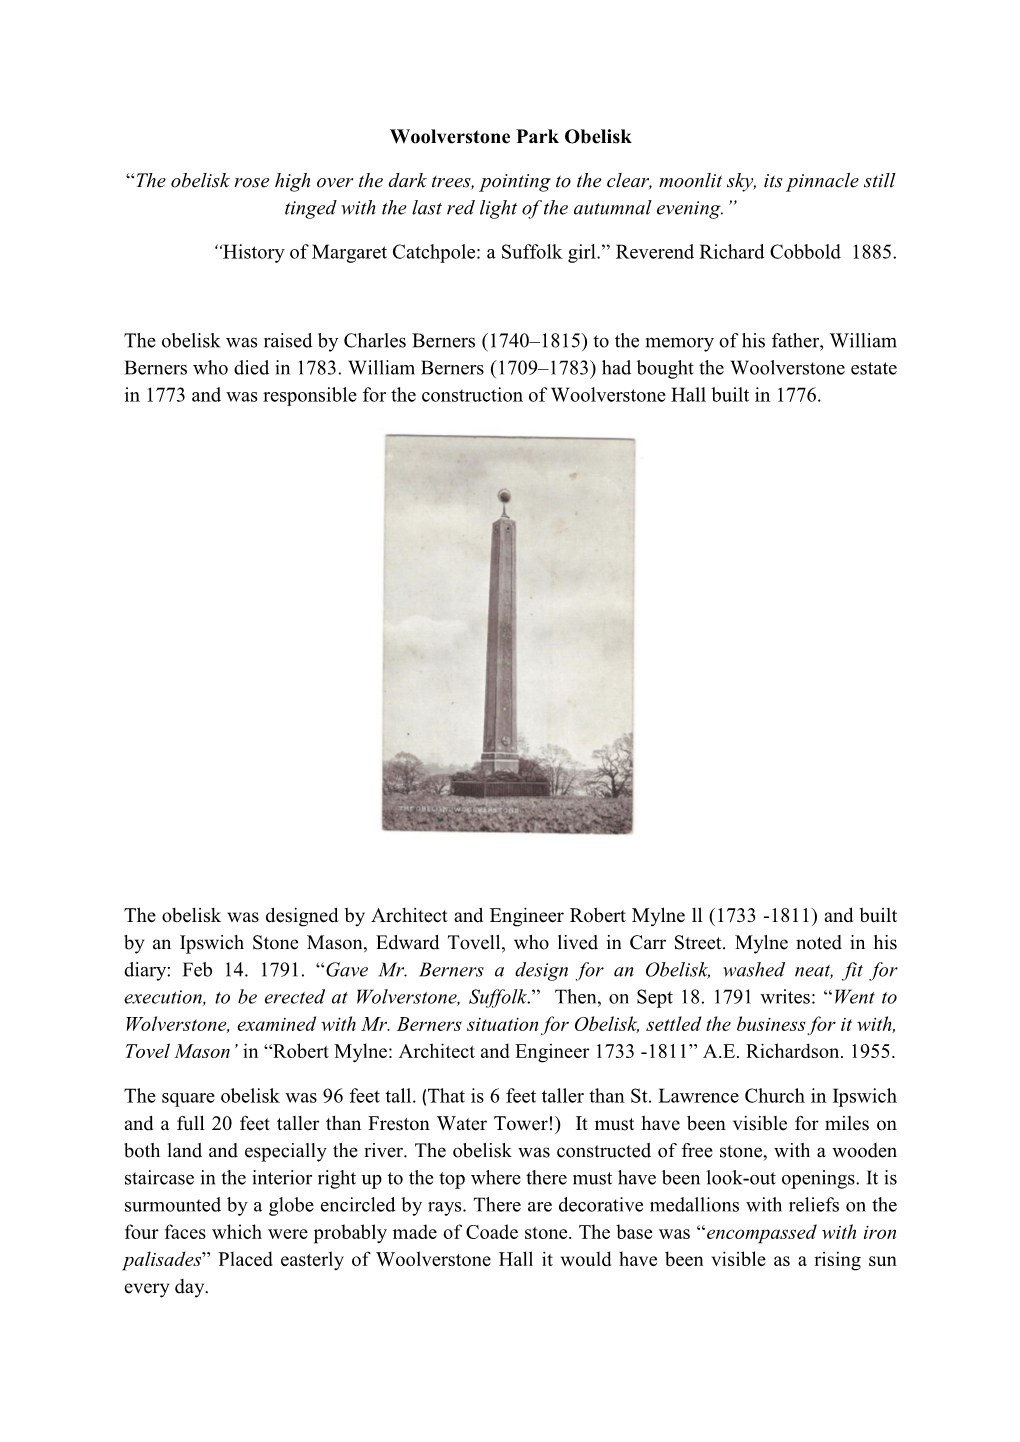 Woolverstone Park Obelisk “The Obelisk Rose High Over the Dark